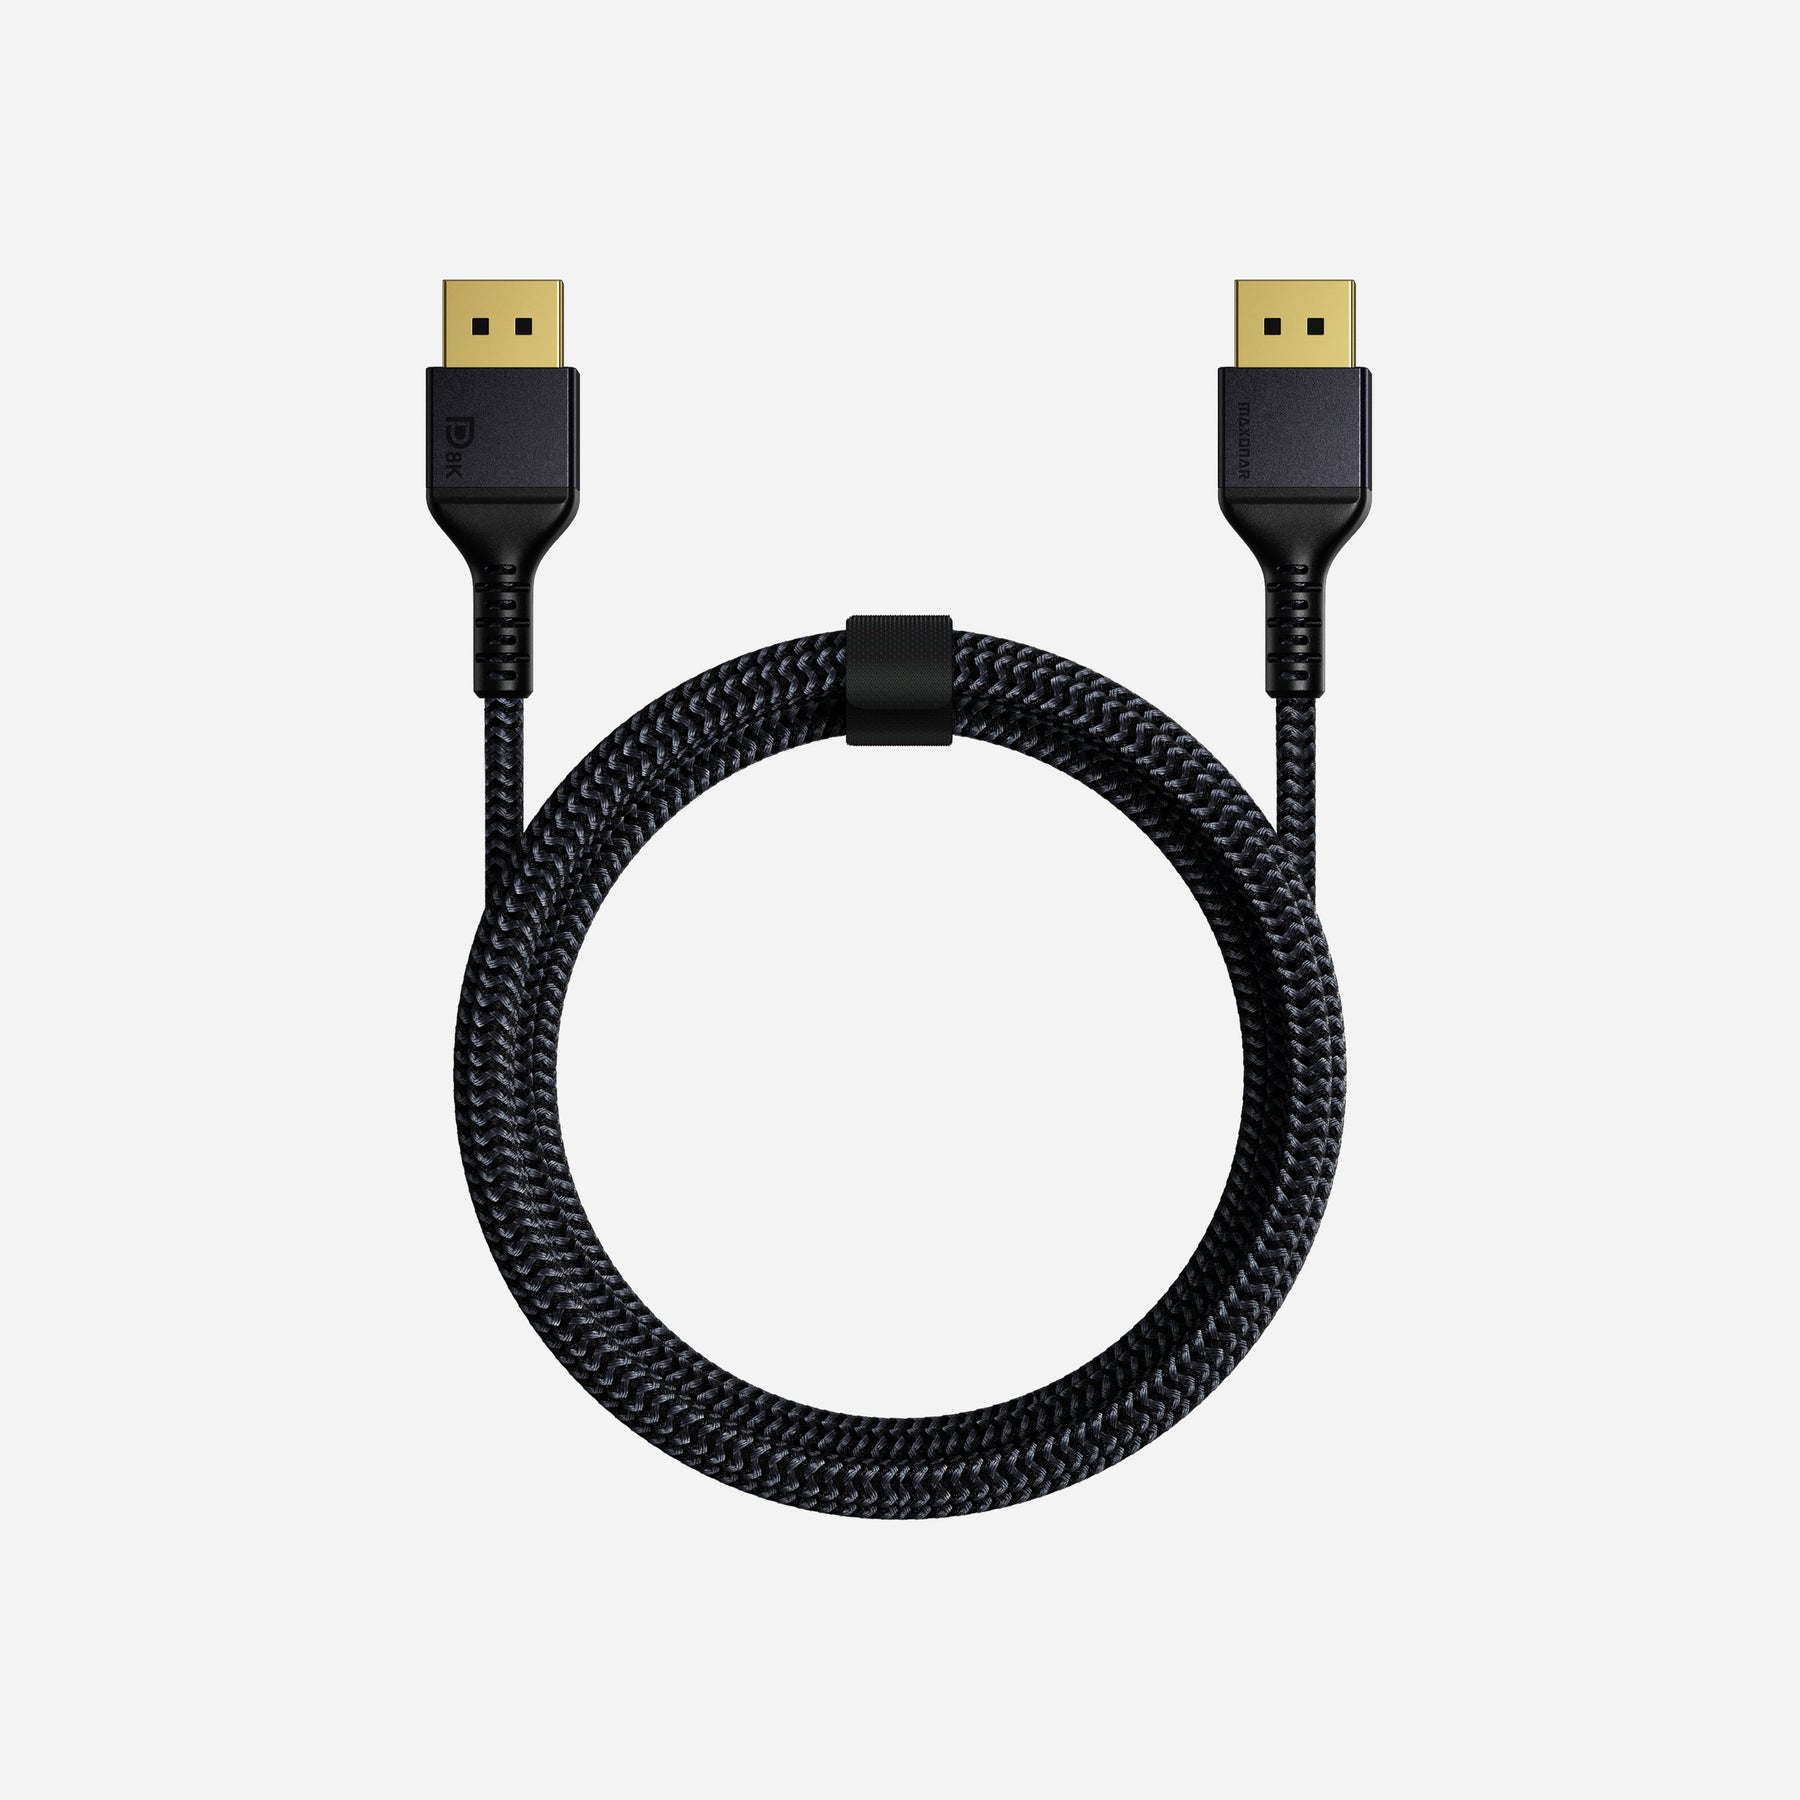 DisplayPort 2.1 Certified cable, 8K/60Hz